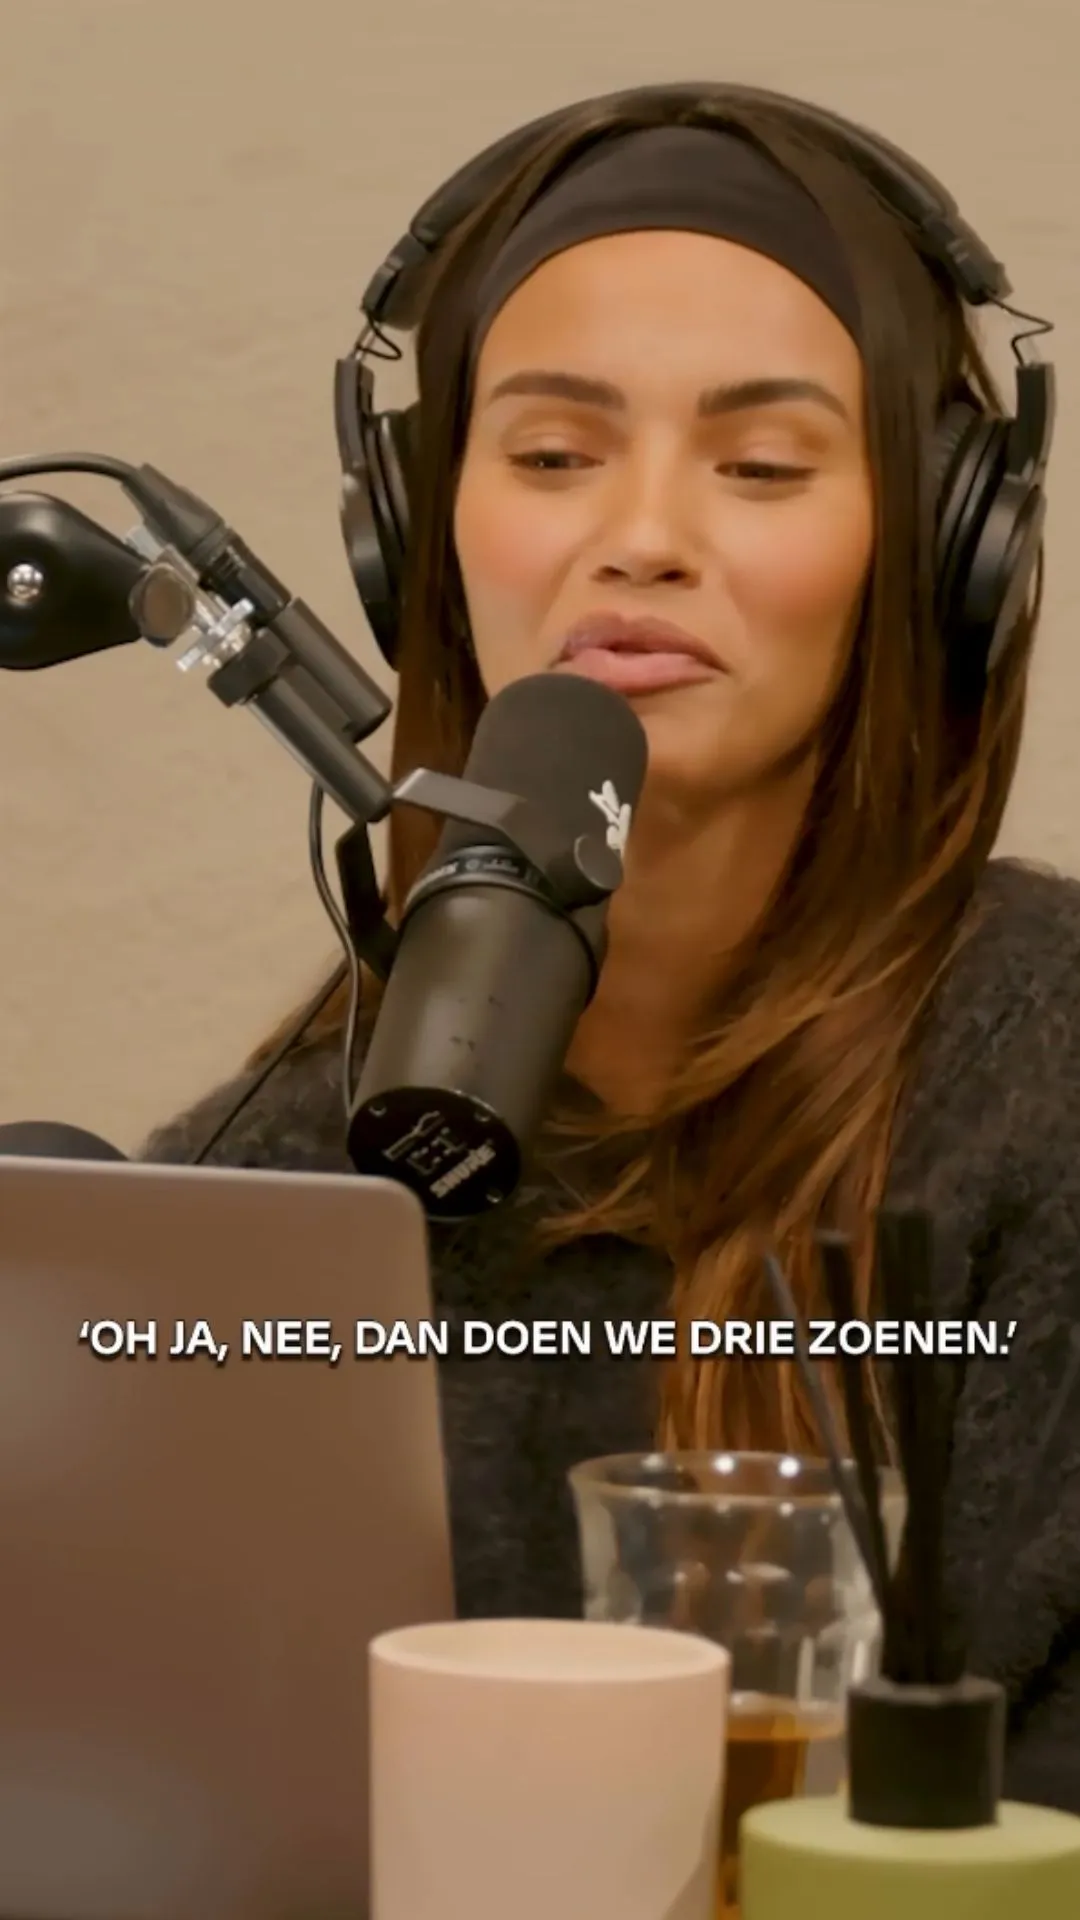 Monica Geuze tegen haar date: "Je mag me best zoenen hoor"